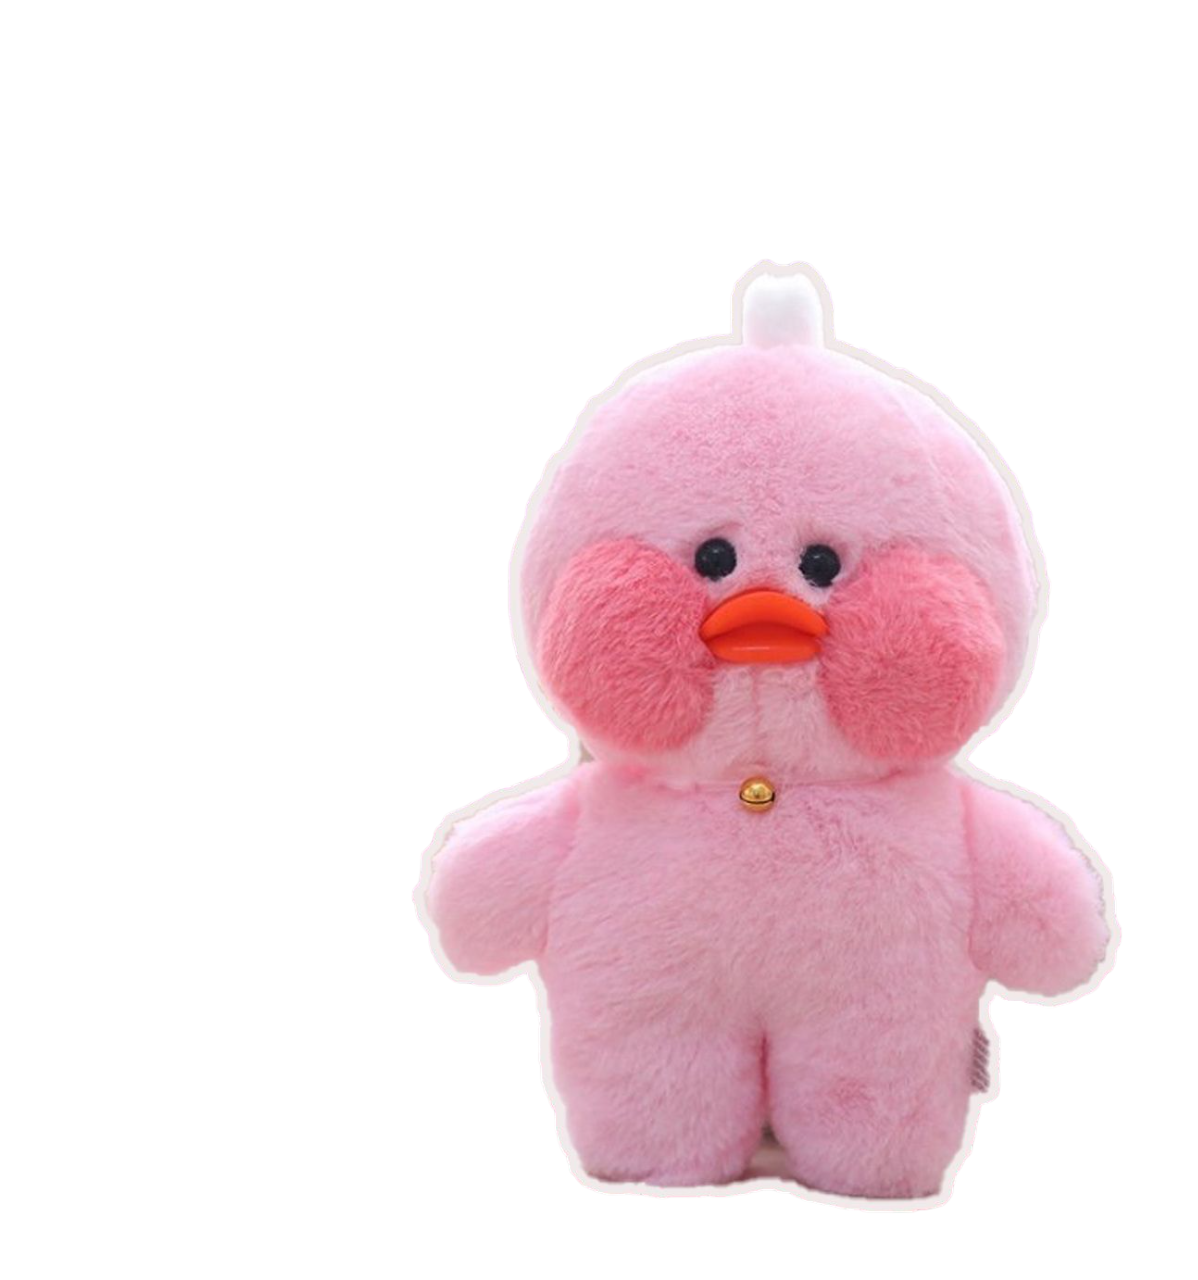 фото Мягкая игрушка plush story плюшевый утенок lalafanfan duck pink розовая 30 см